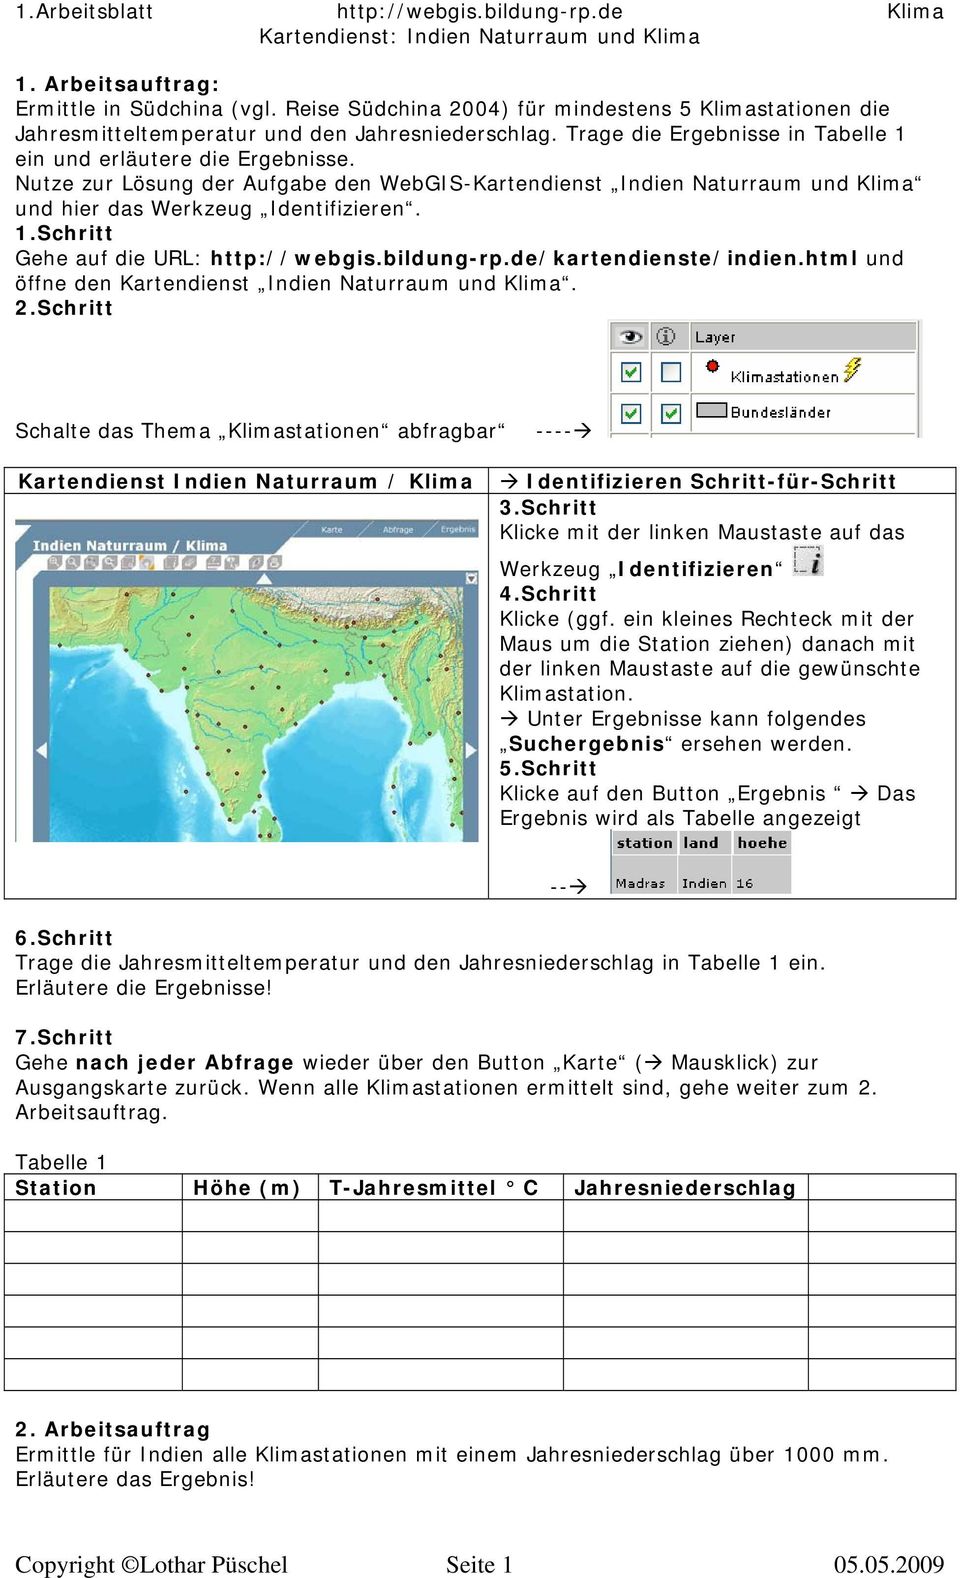 Nutze zur Lösung der Aufgabe den WebGIS-Kartendienst Indien Naturraum und Klima und hier das Werkzeug Identifizieren. 1.Schritt Gehe auf die URL: http://webgis.bildung-rp.de/kartendienste/indien.